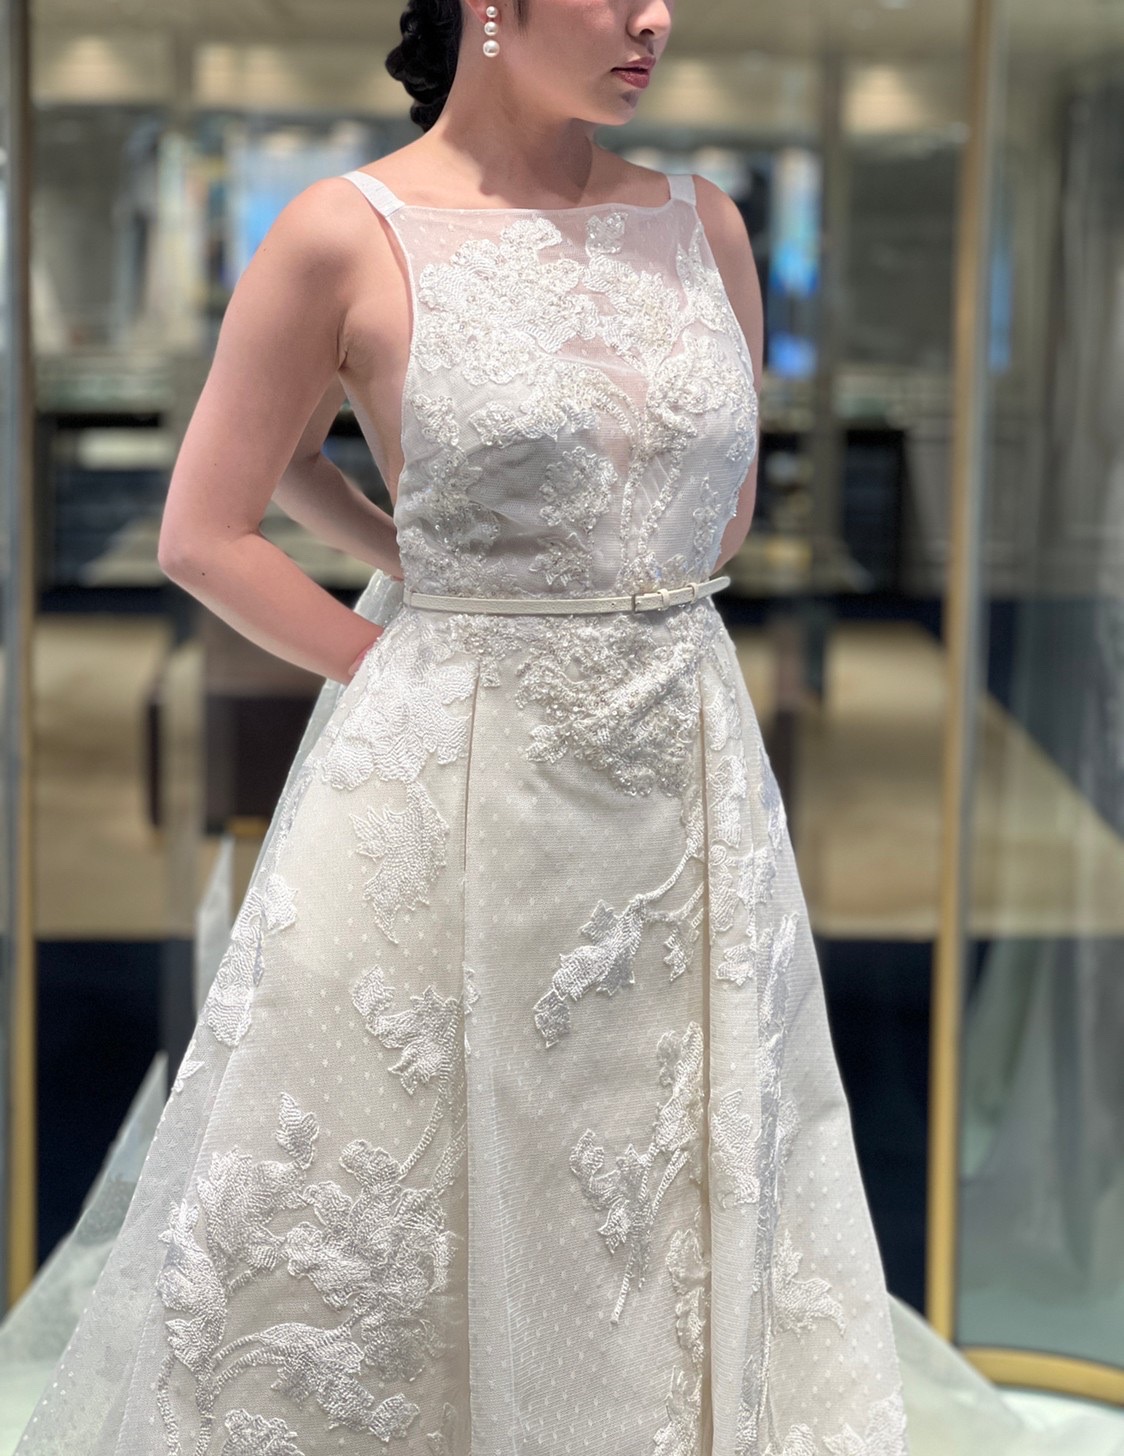 愛の不時着で話題のソン・イェジンが結婚式でお召しになられたエリー サーブ ブライドのAラインのウェディングドレス